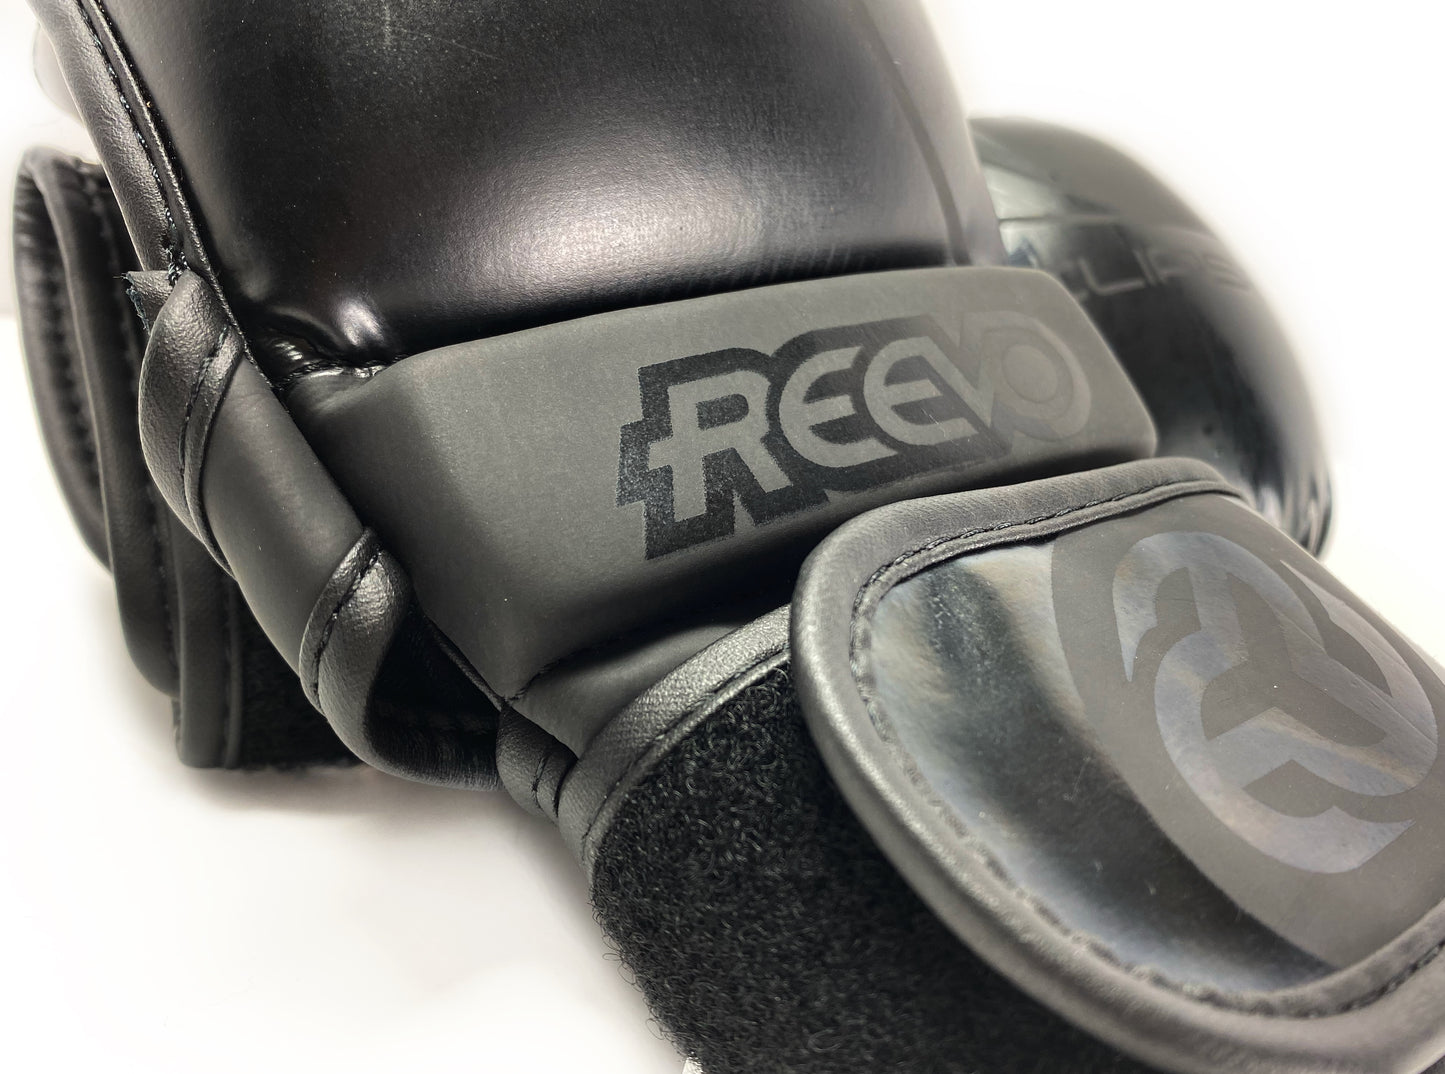 Reevo Eclipse Hybrid Glove